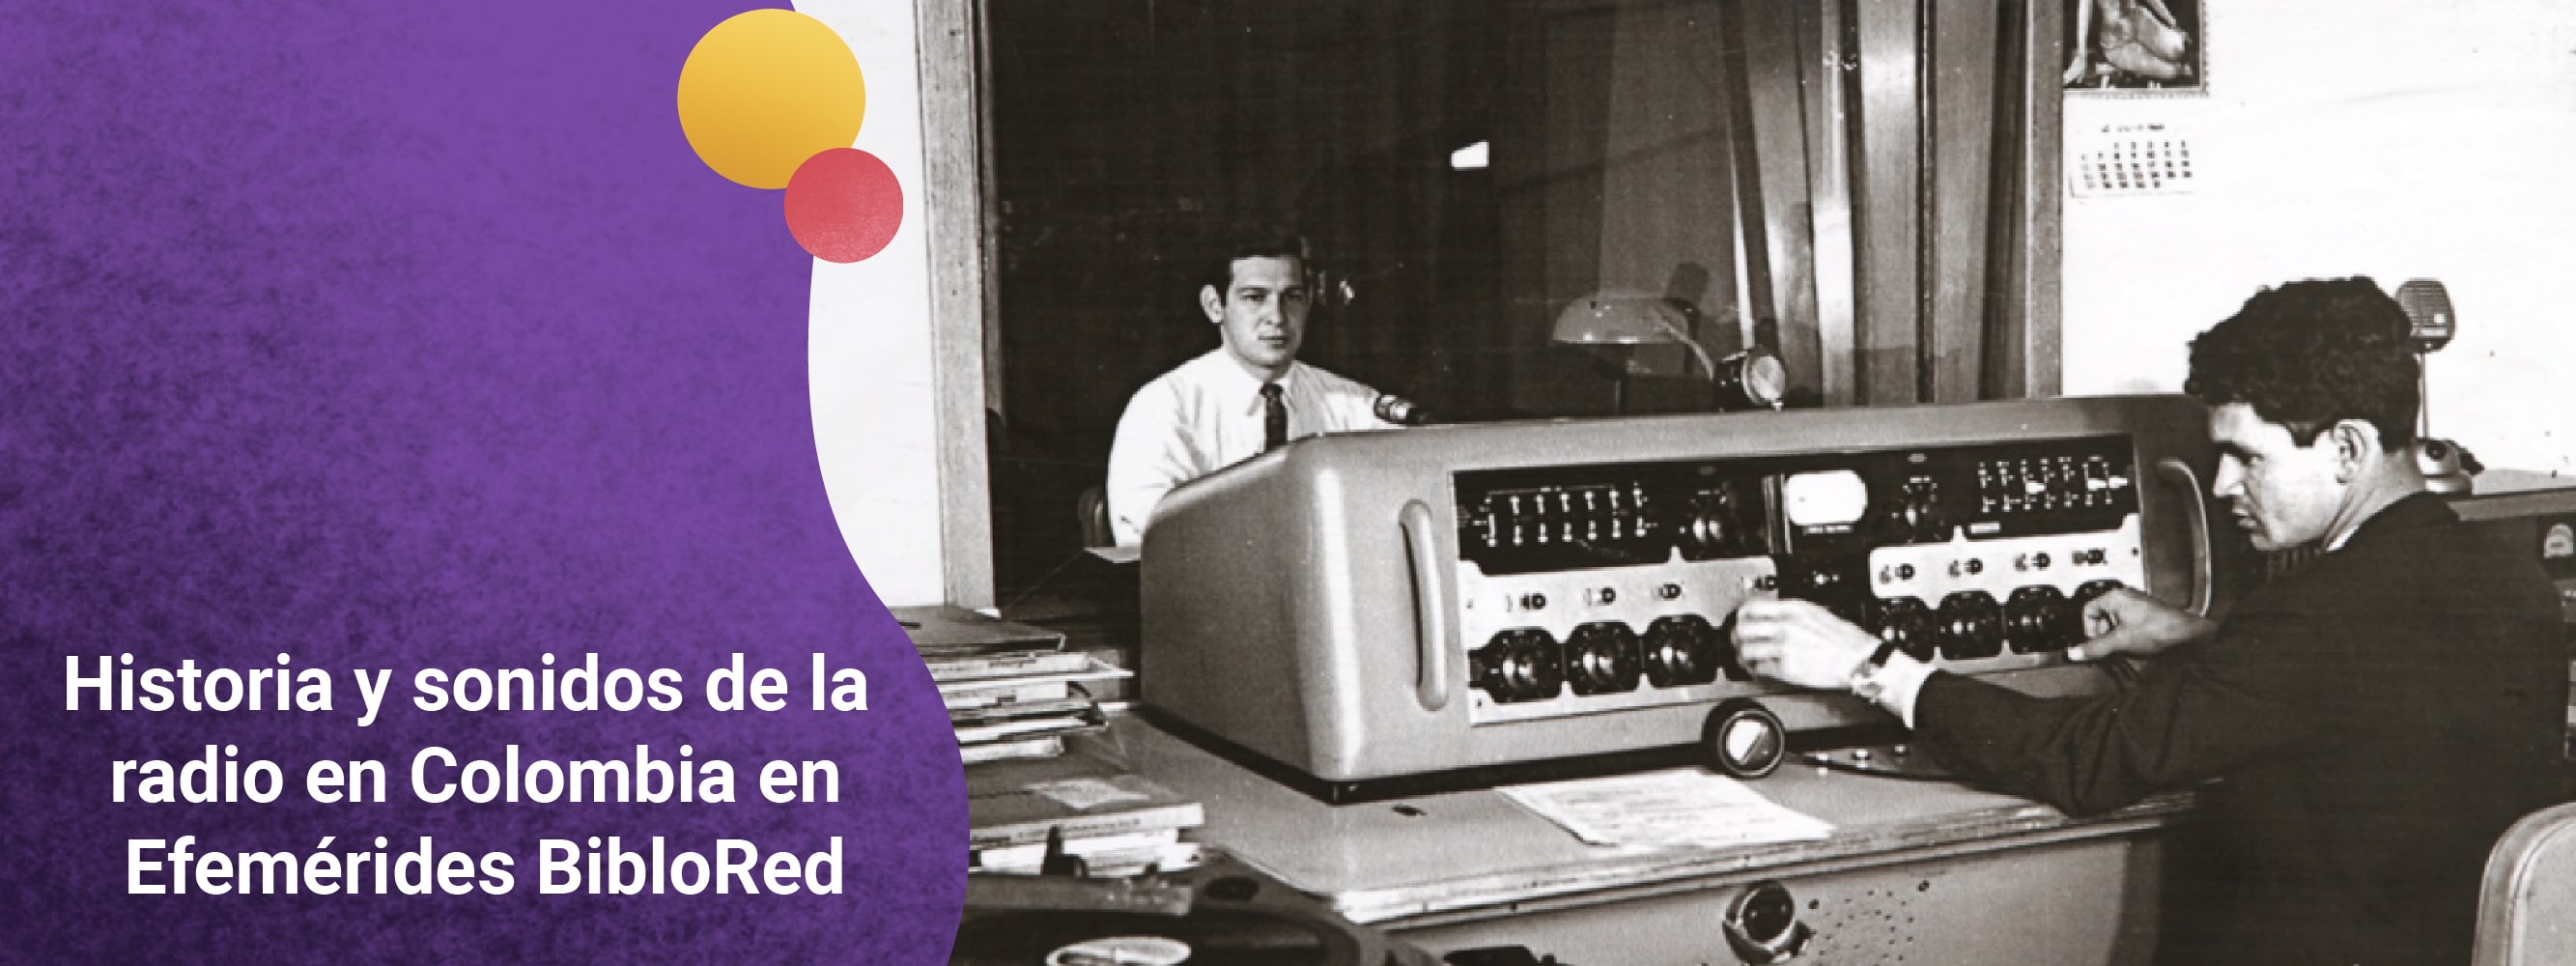 Historia y sonidos de la radio en Colombia en Efemérides BibloRed